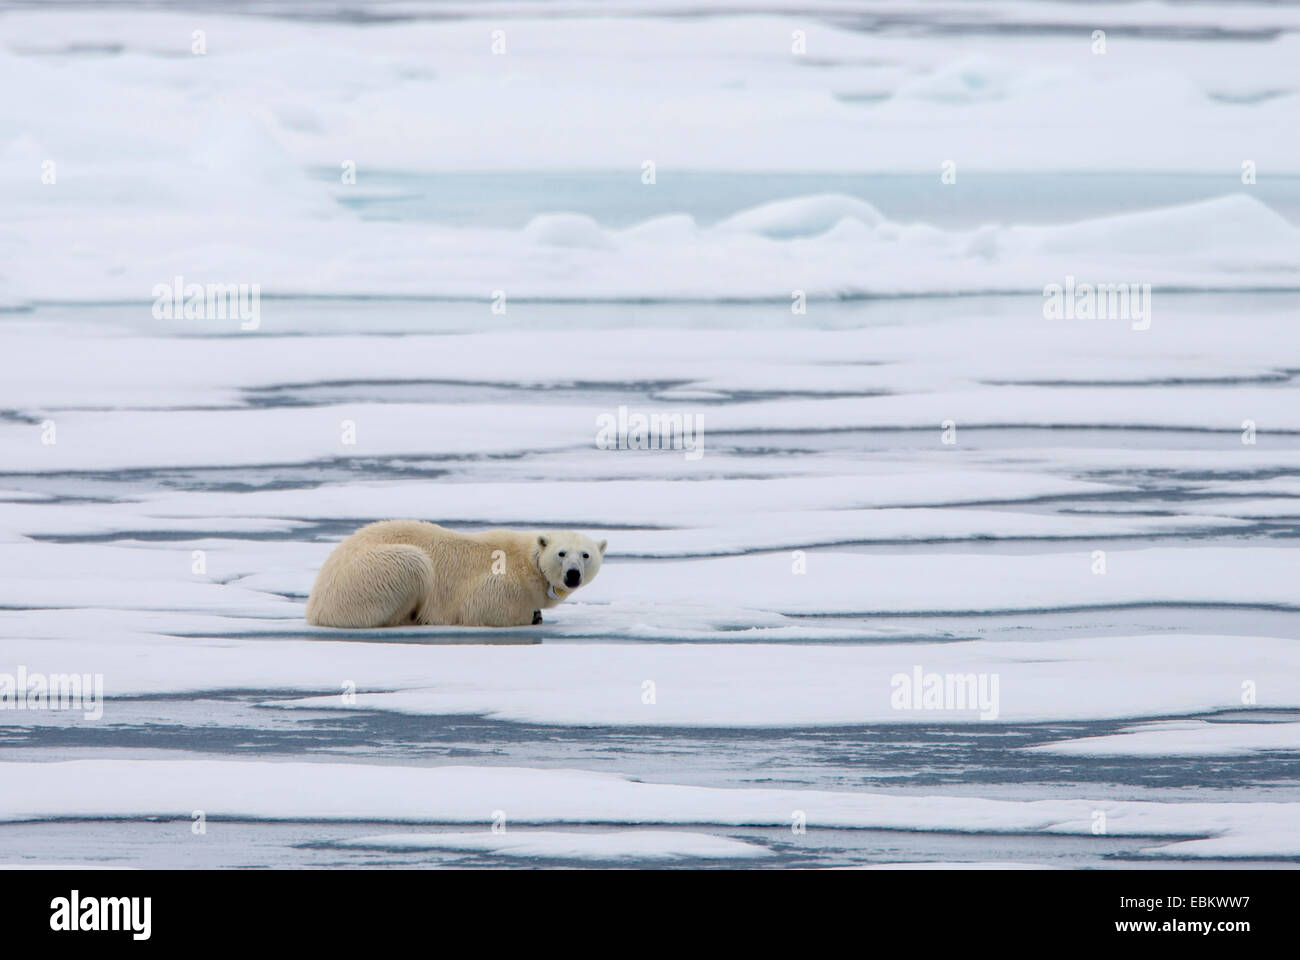 El oso polar (Ursus maritimus), hembra descansando sobre el mar de hielo, Noruega, Svalbard, Svalbard Inseln, Sju°yane Foto de stock